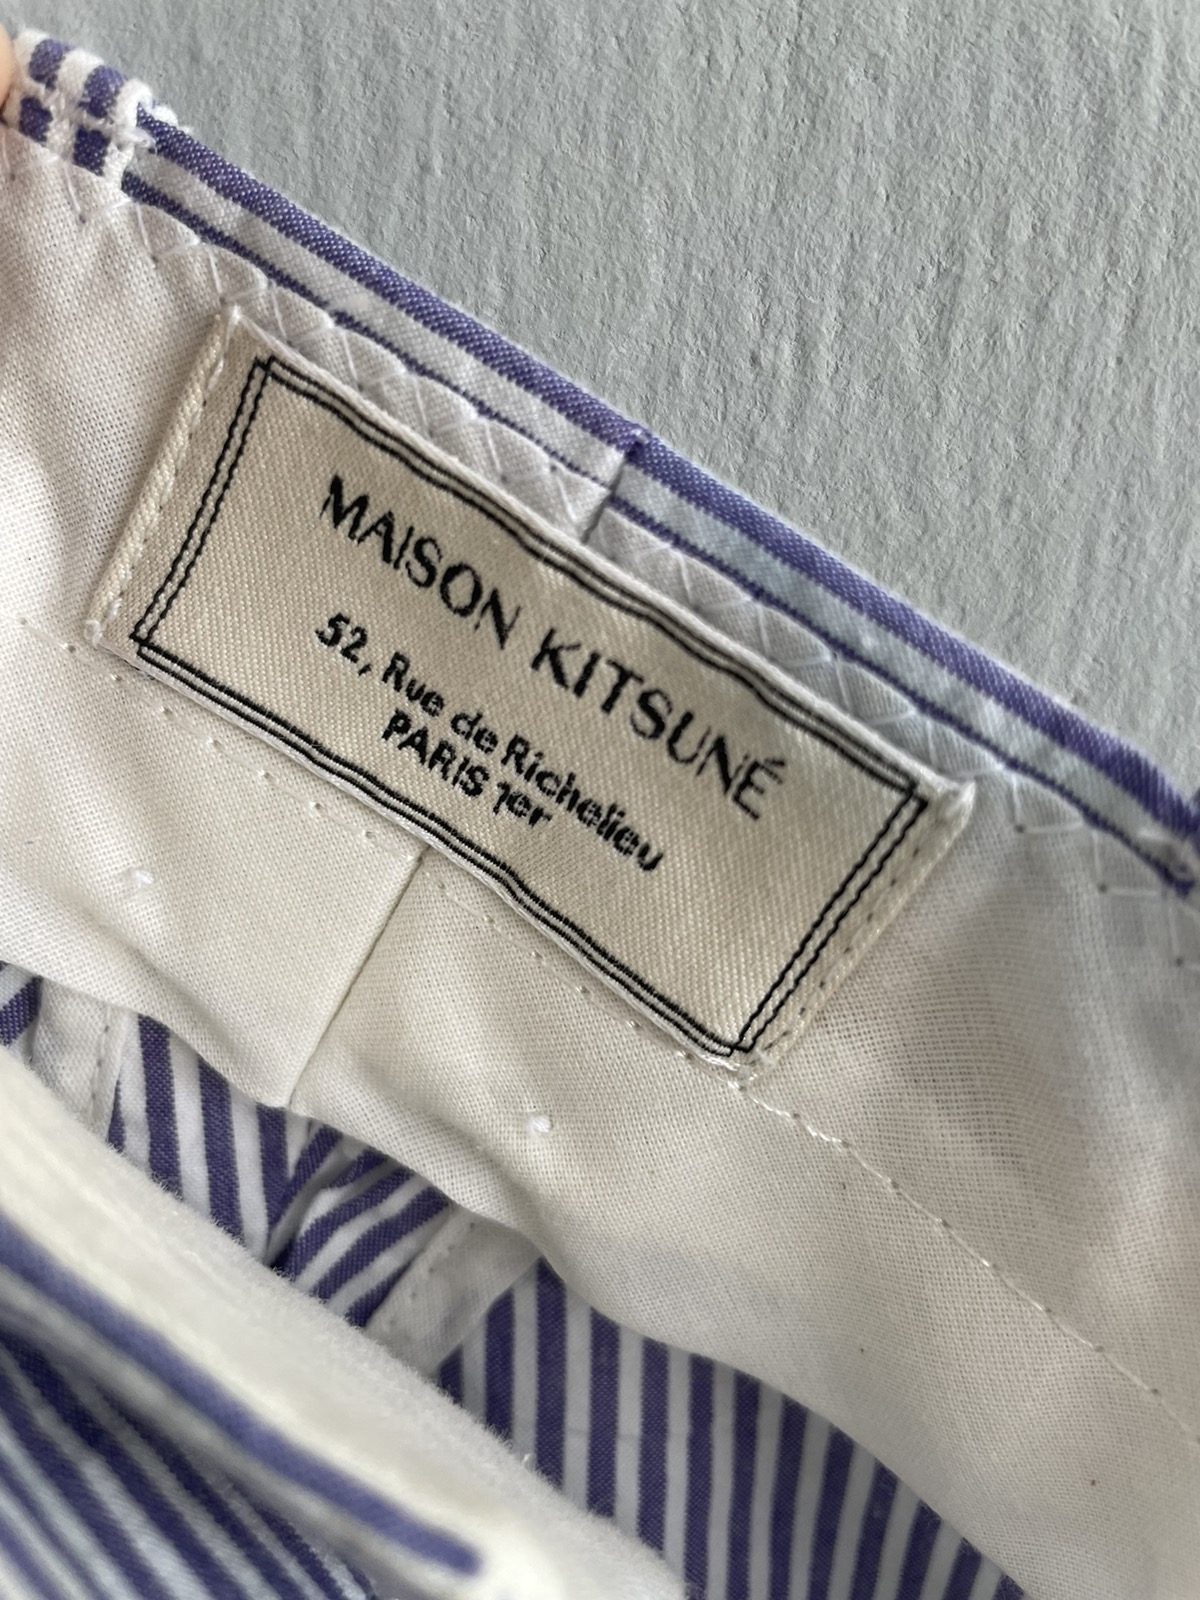 ‼️FINAL PRICE DROP‼️Maison Kitsune Stripe Casual Pants - 8